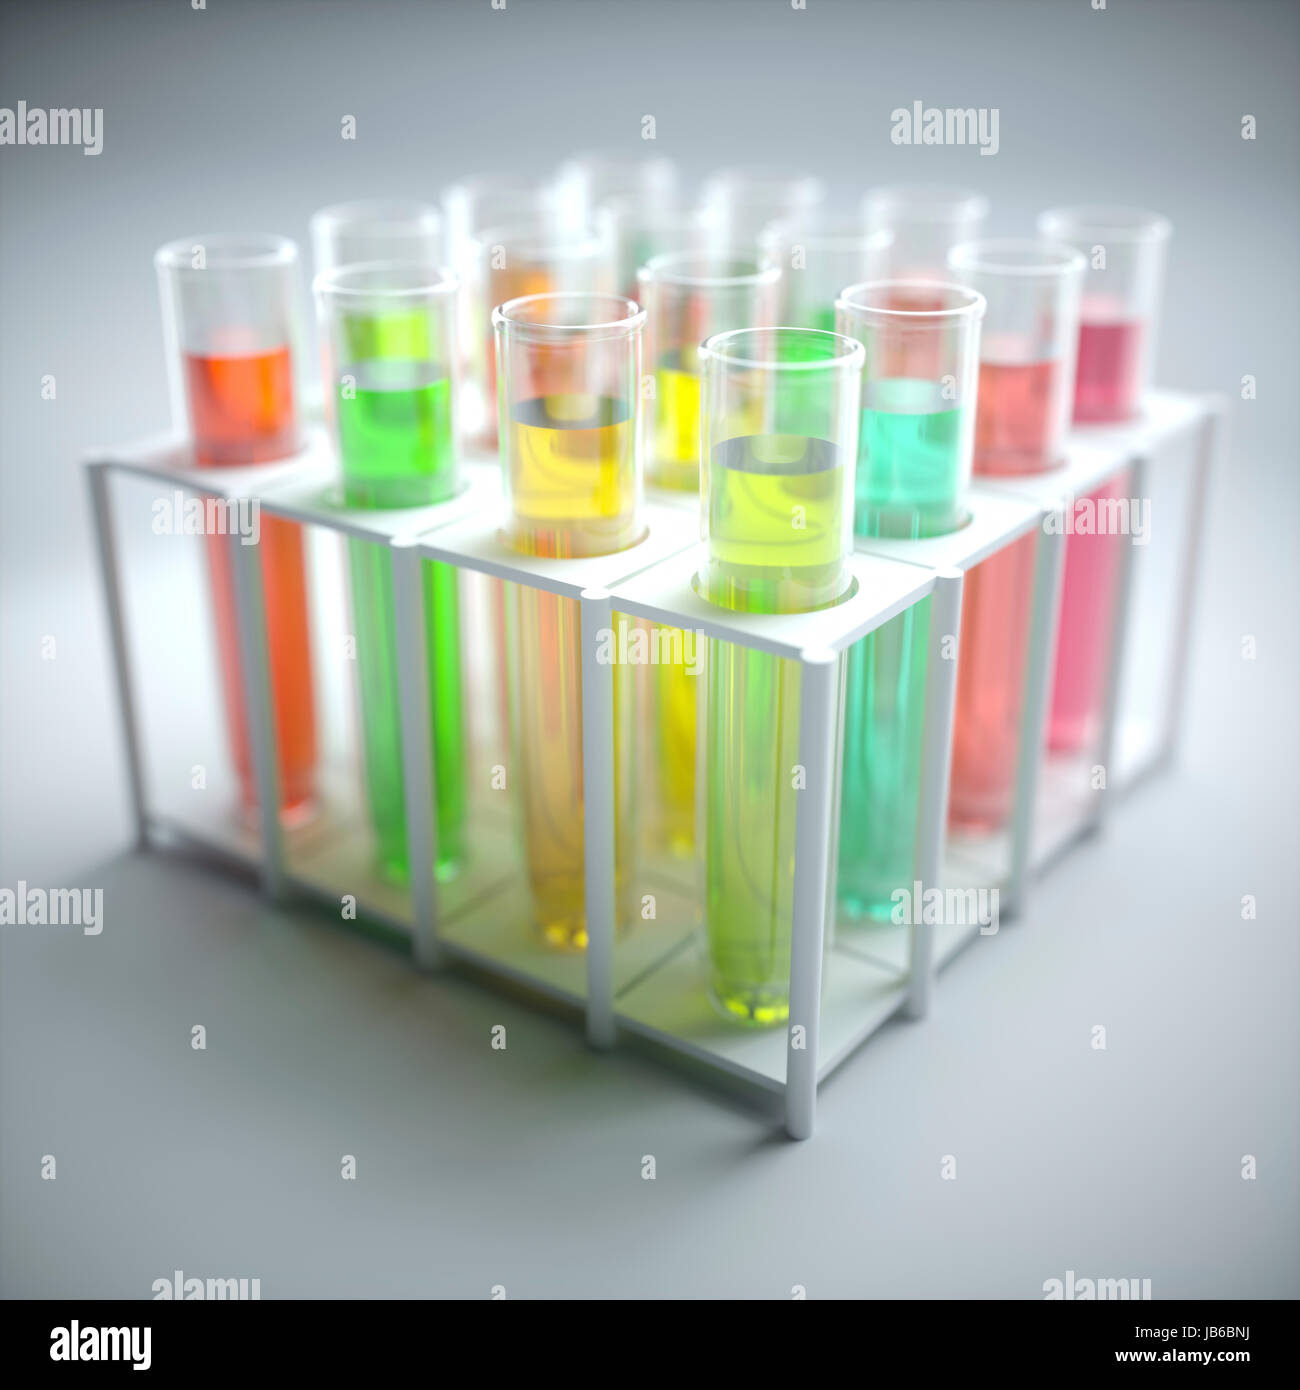 Tubes à essais avec des liquides colorés, illustration. Banque D'Images